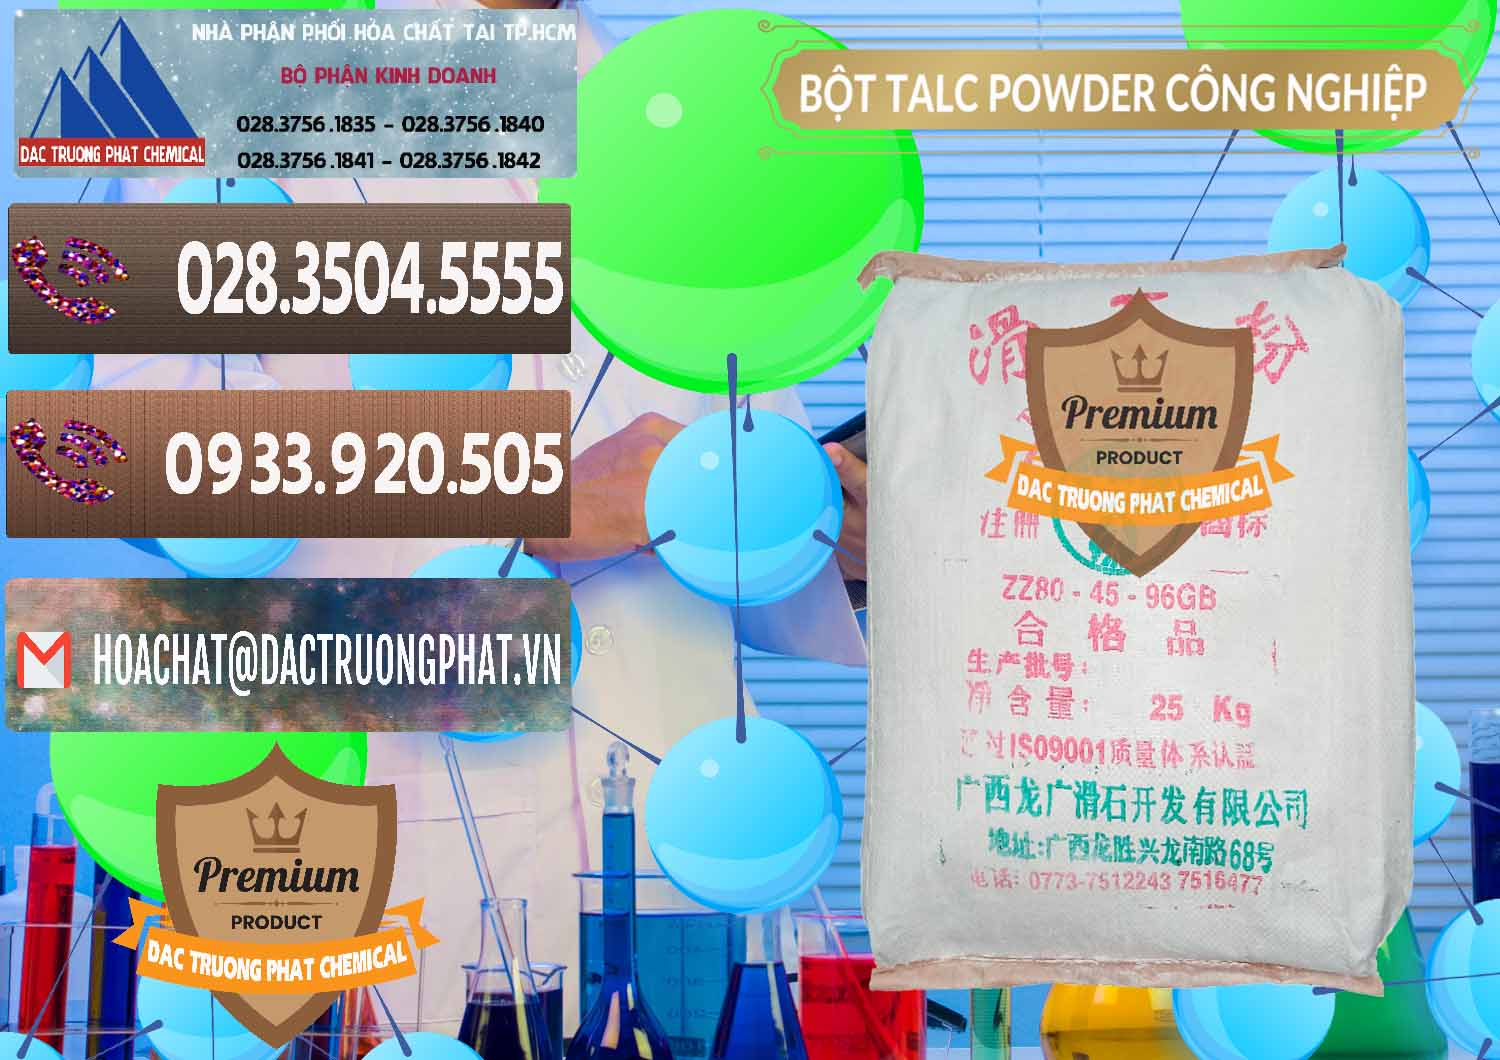 Nơi chuyên bán và phân phối Bột Talc Powder Công Nghiệp Trung Quốc China - 0037 - Nhà phân phối & kinh doanh hóa chất tại TP.HCM - hoachatviet.net